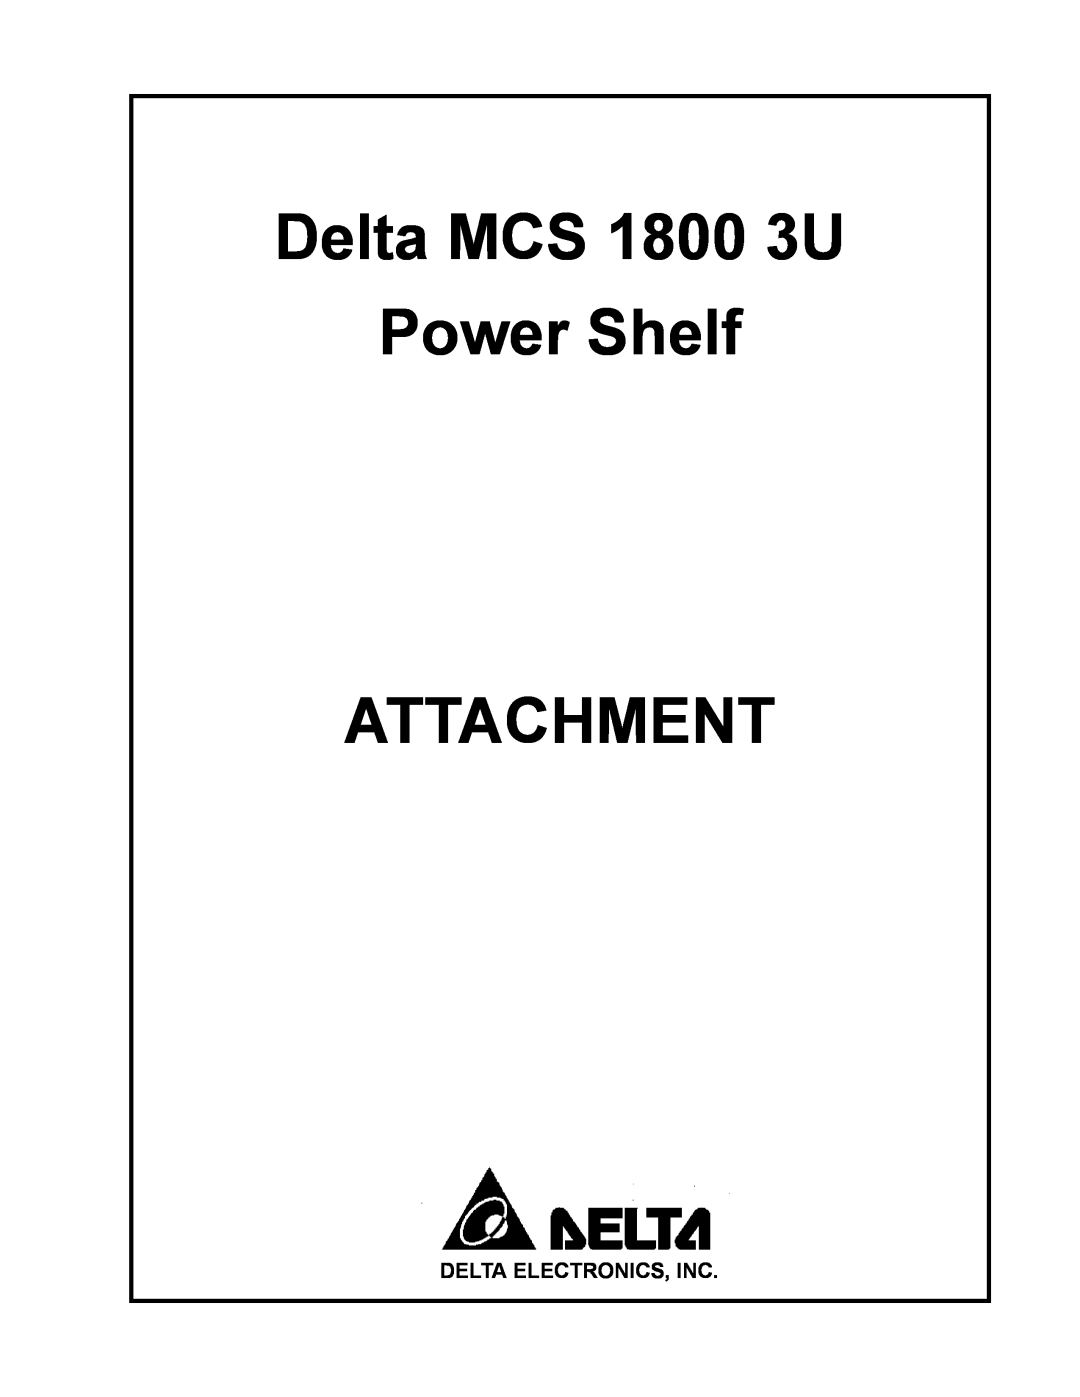 Delta MCS-1800 manual Delta MCS 1800 3U Power Shelf ATTACHMENT, Delta Electronics, Inc 